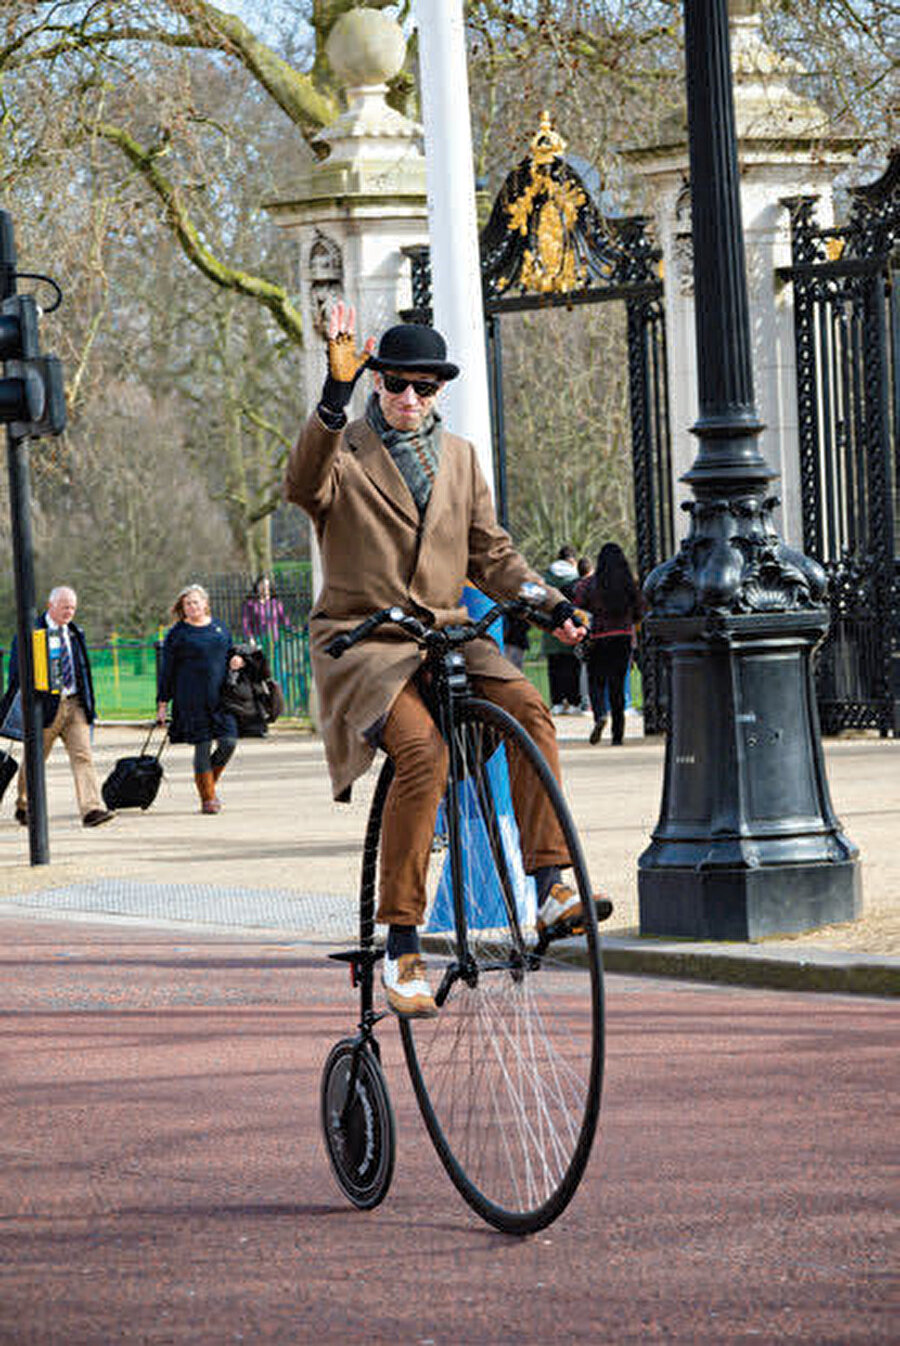 İngiliz halkının %3’ü her gün bisiklete biniyor. %7.6’sı haftada en az bir kere bisiklet kullanıyor.